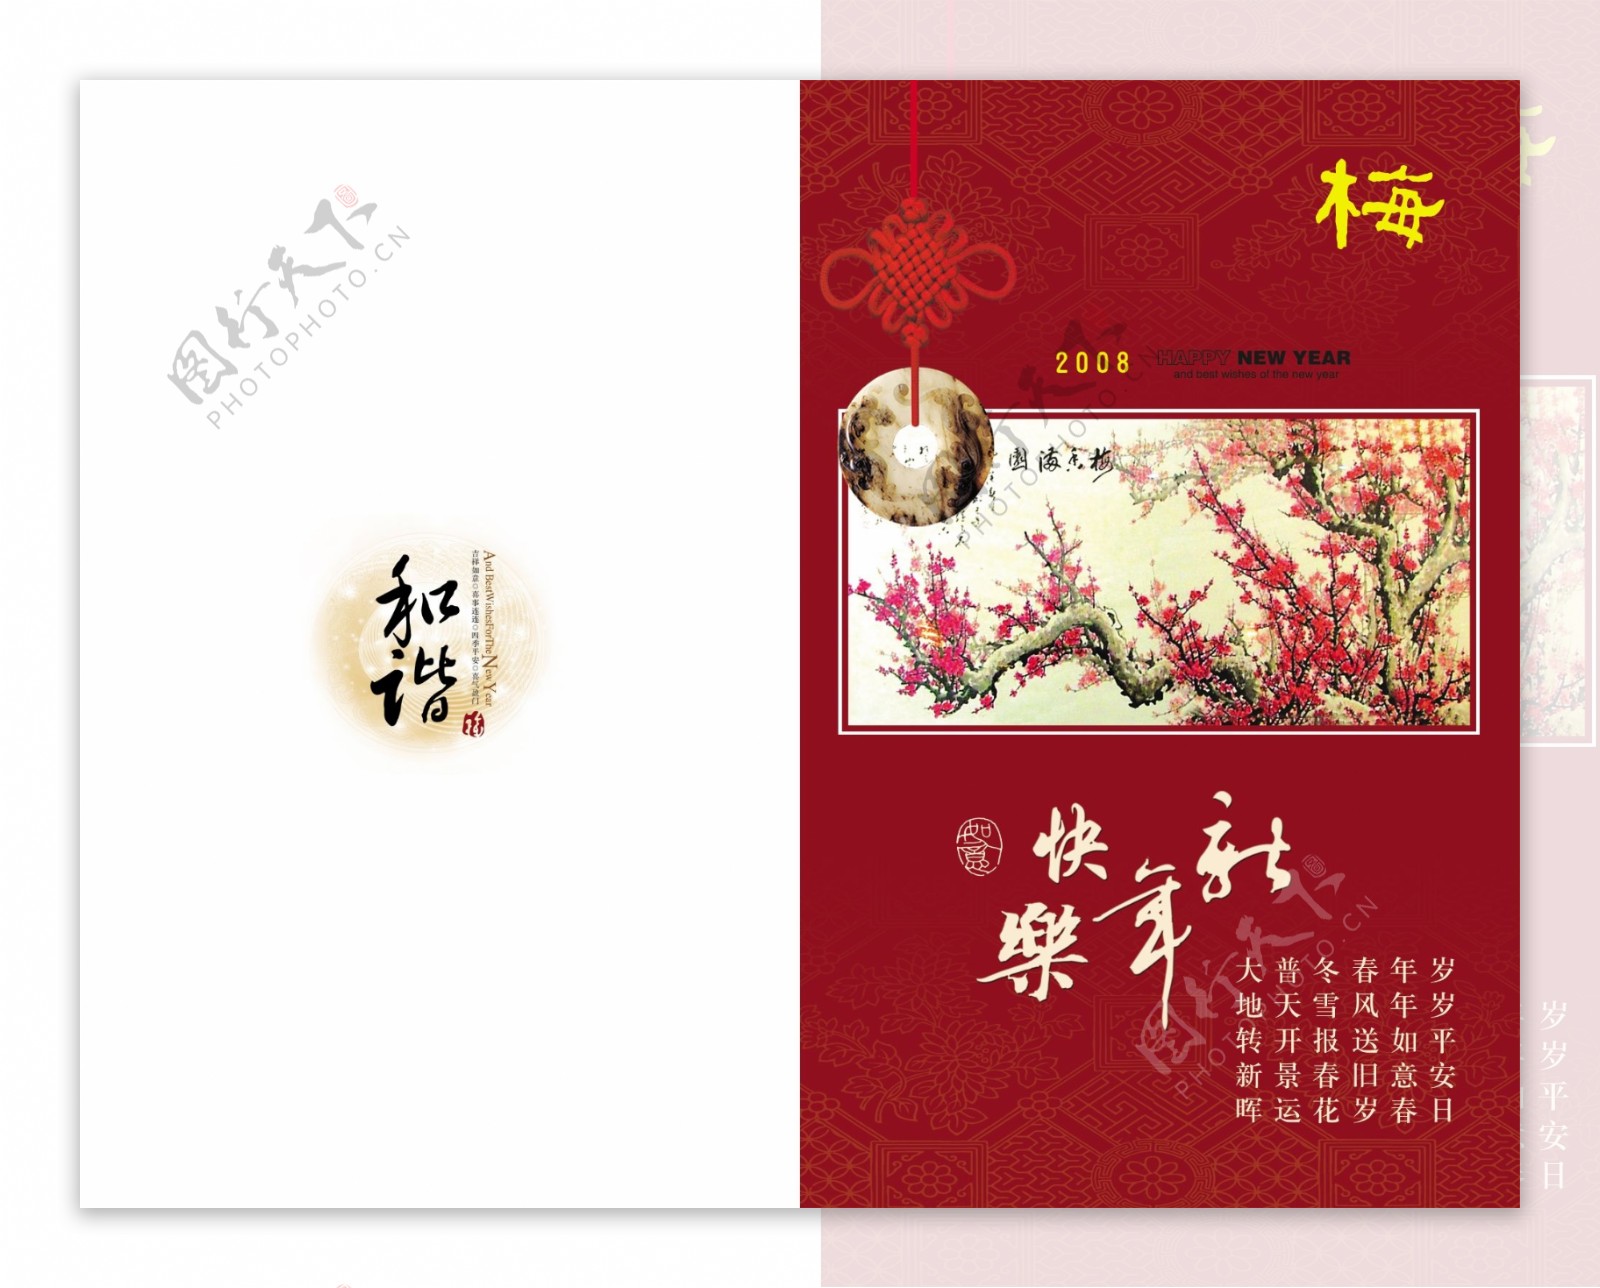 邮政贺卡梅花贺卡设计新年快乐贺卡卡片设计